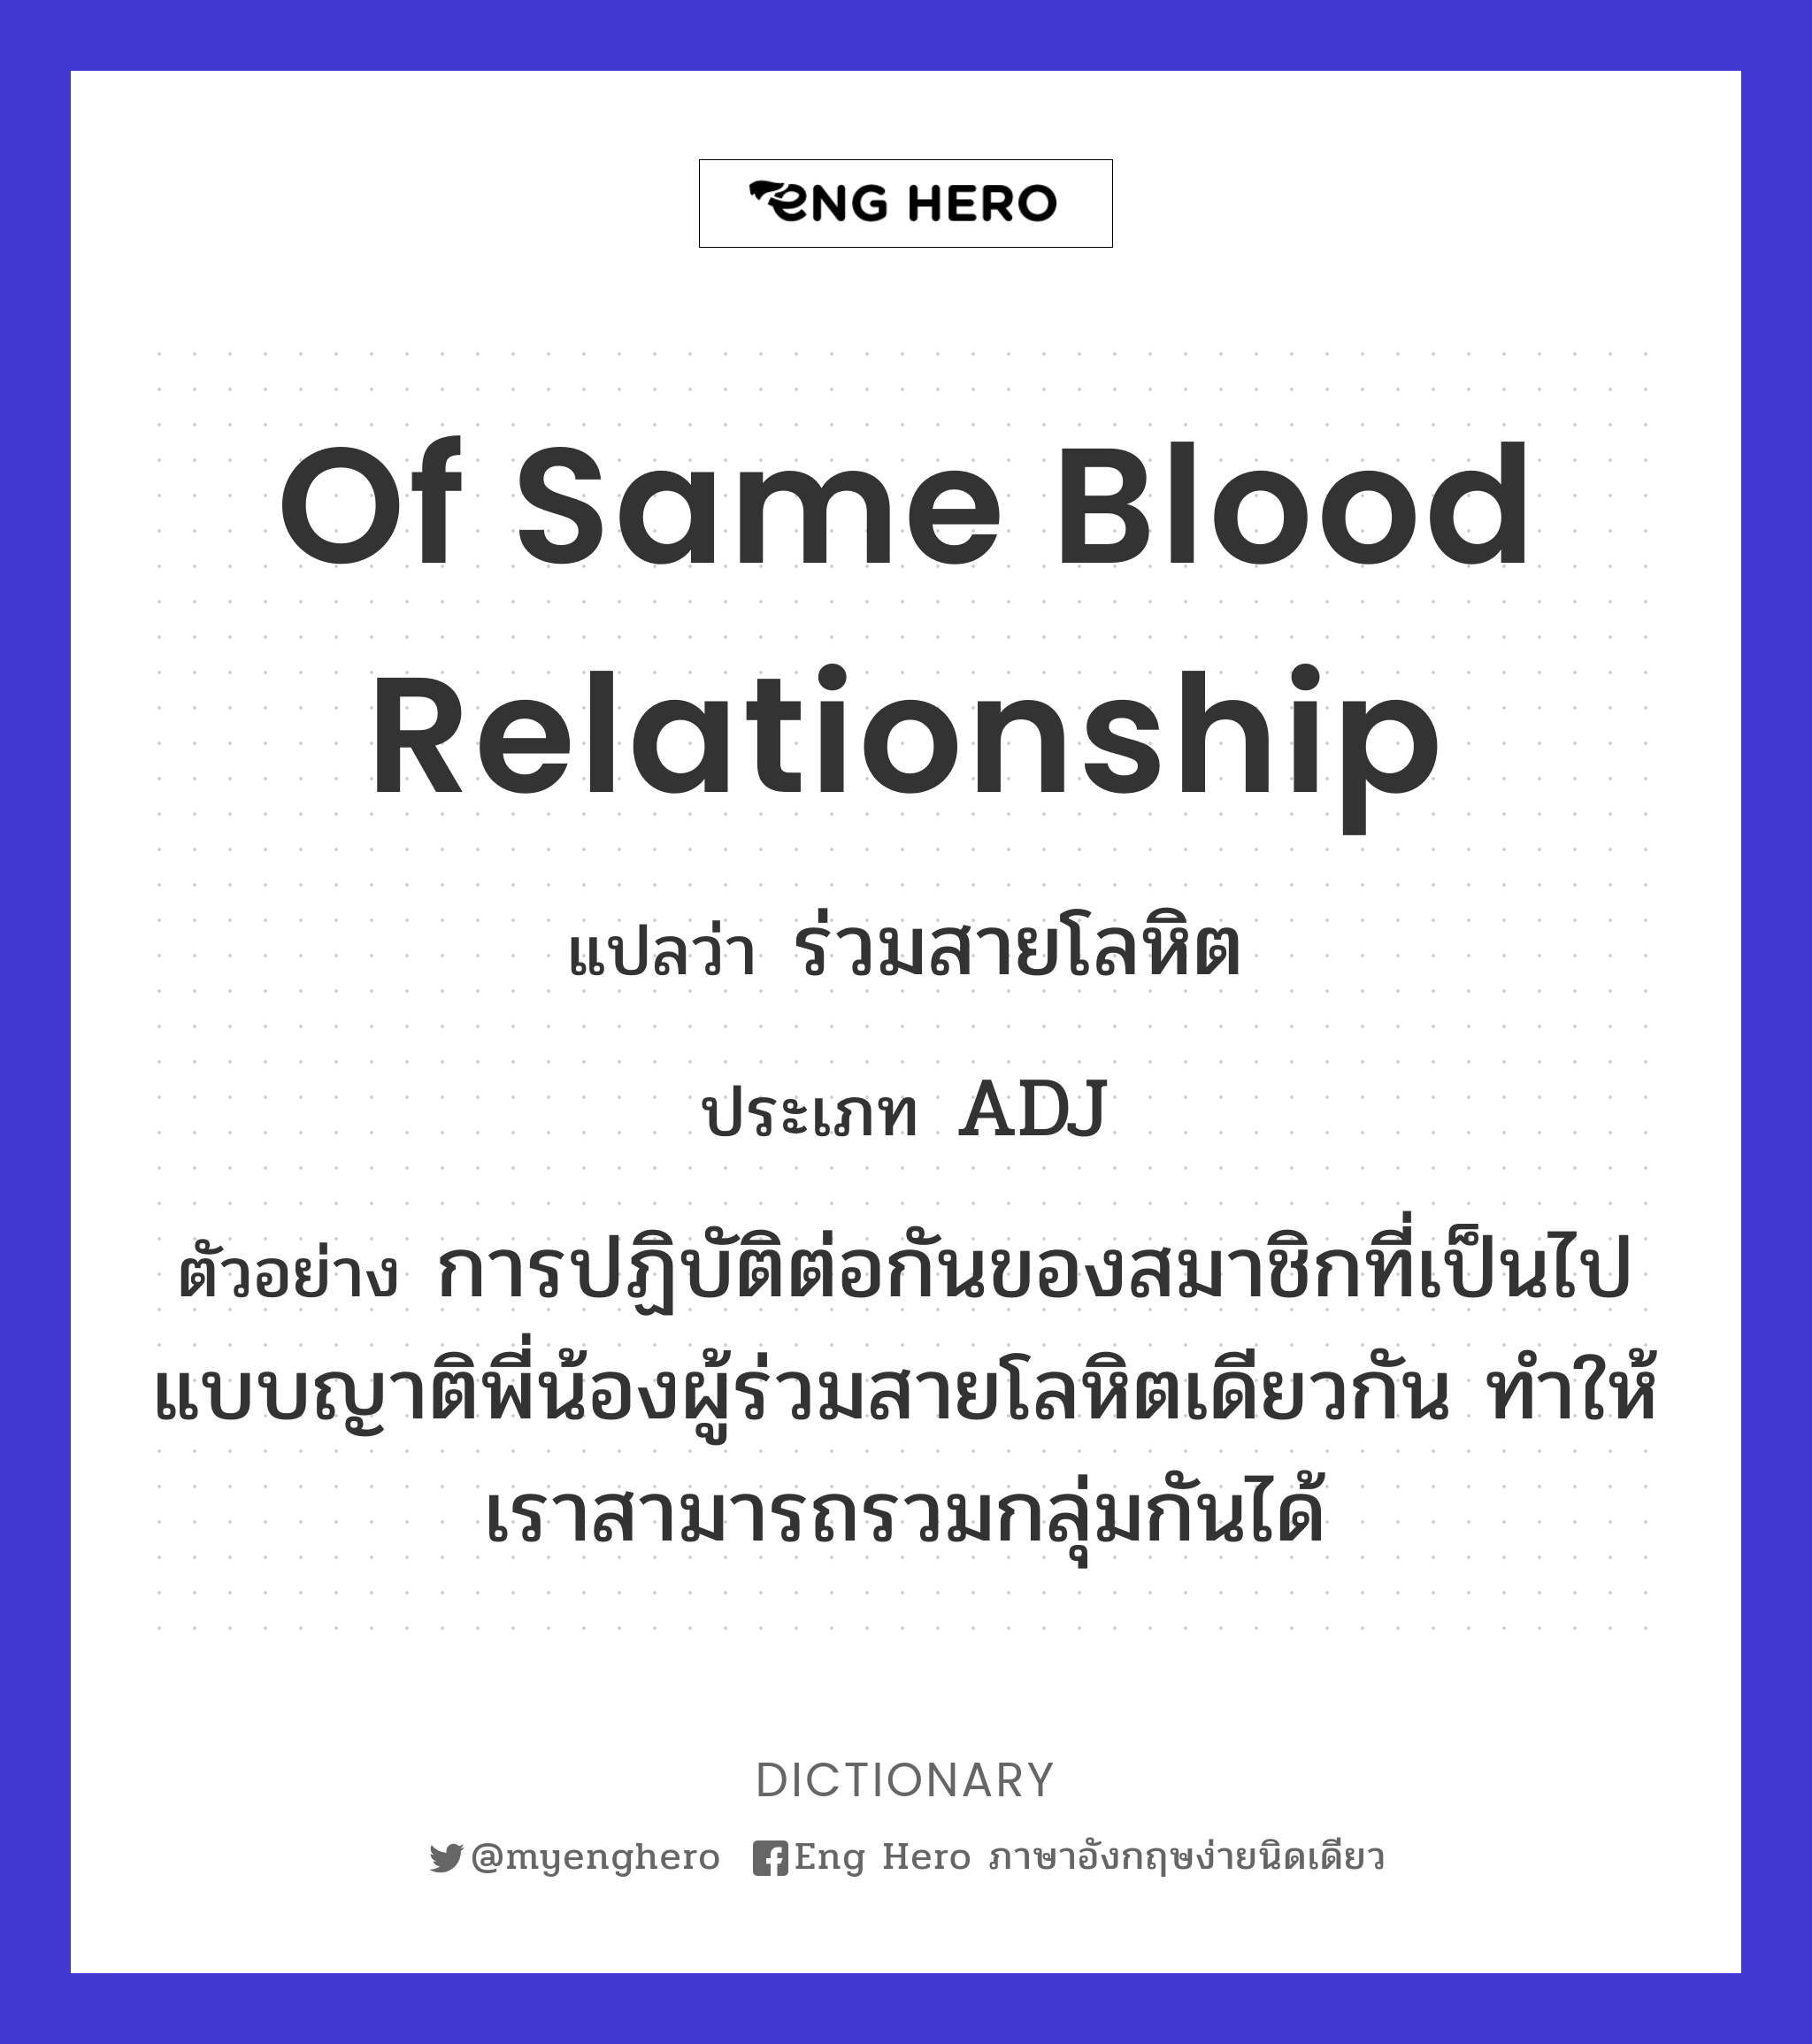 of same blood relationship